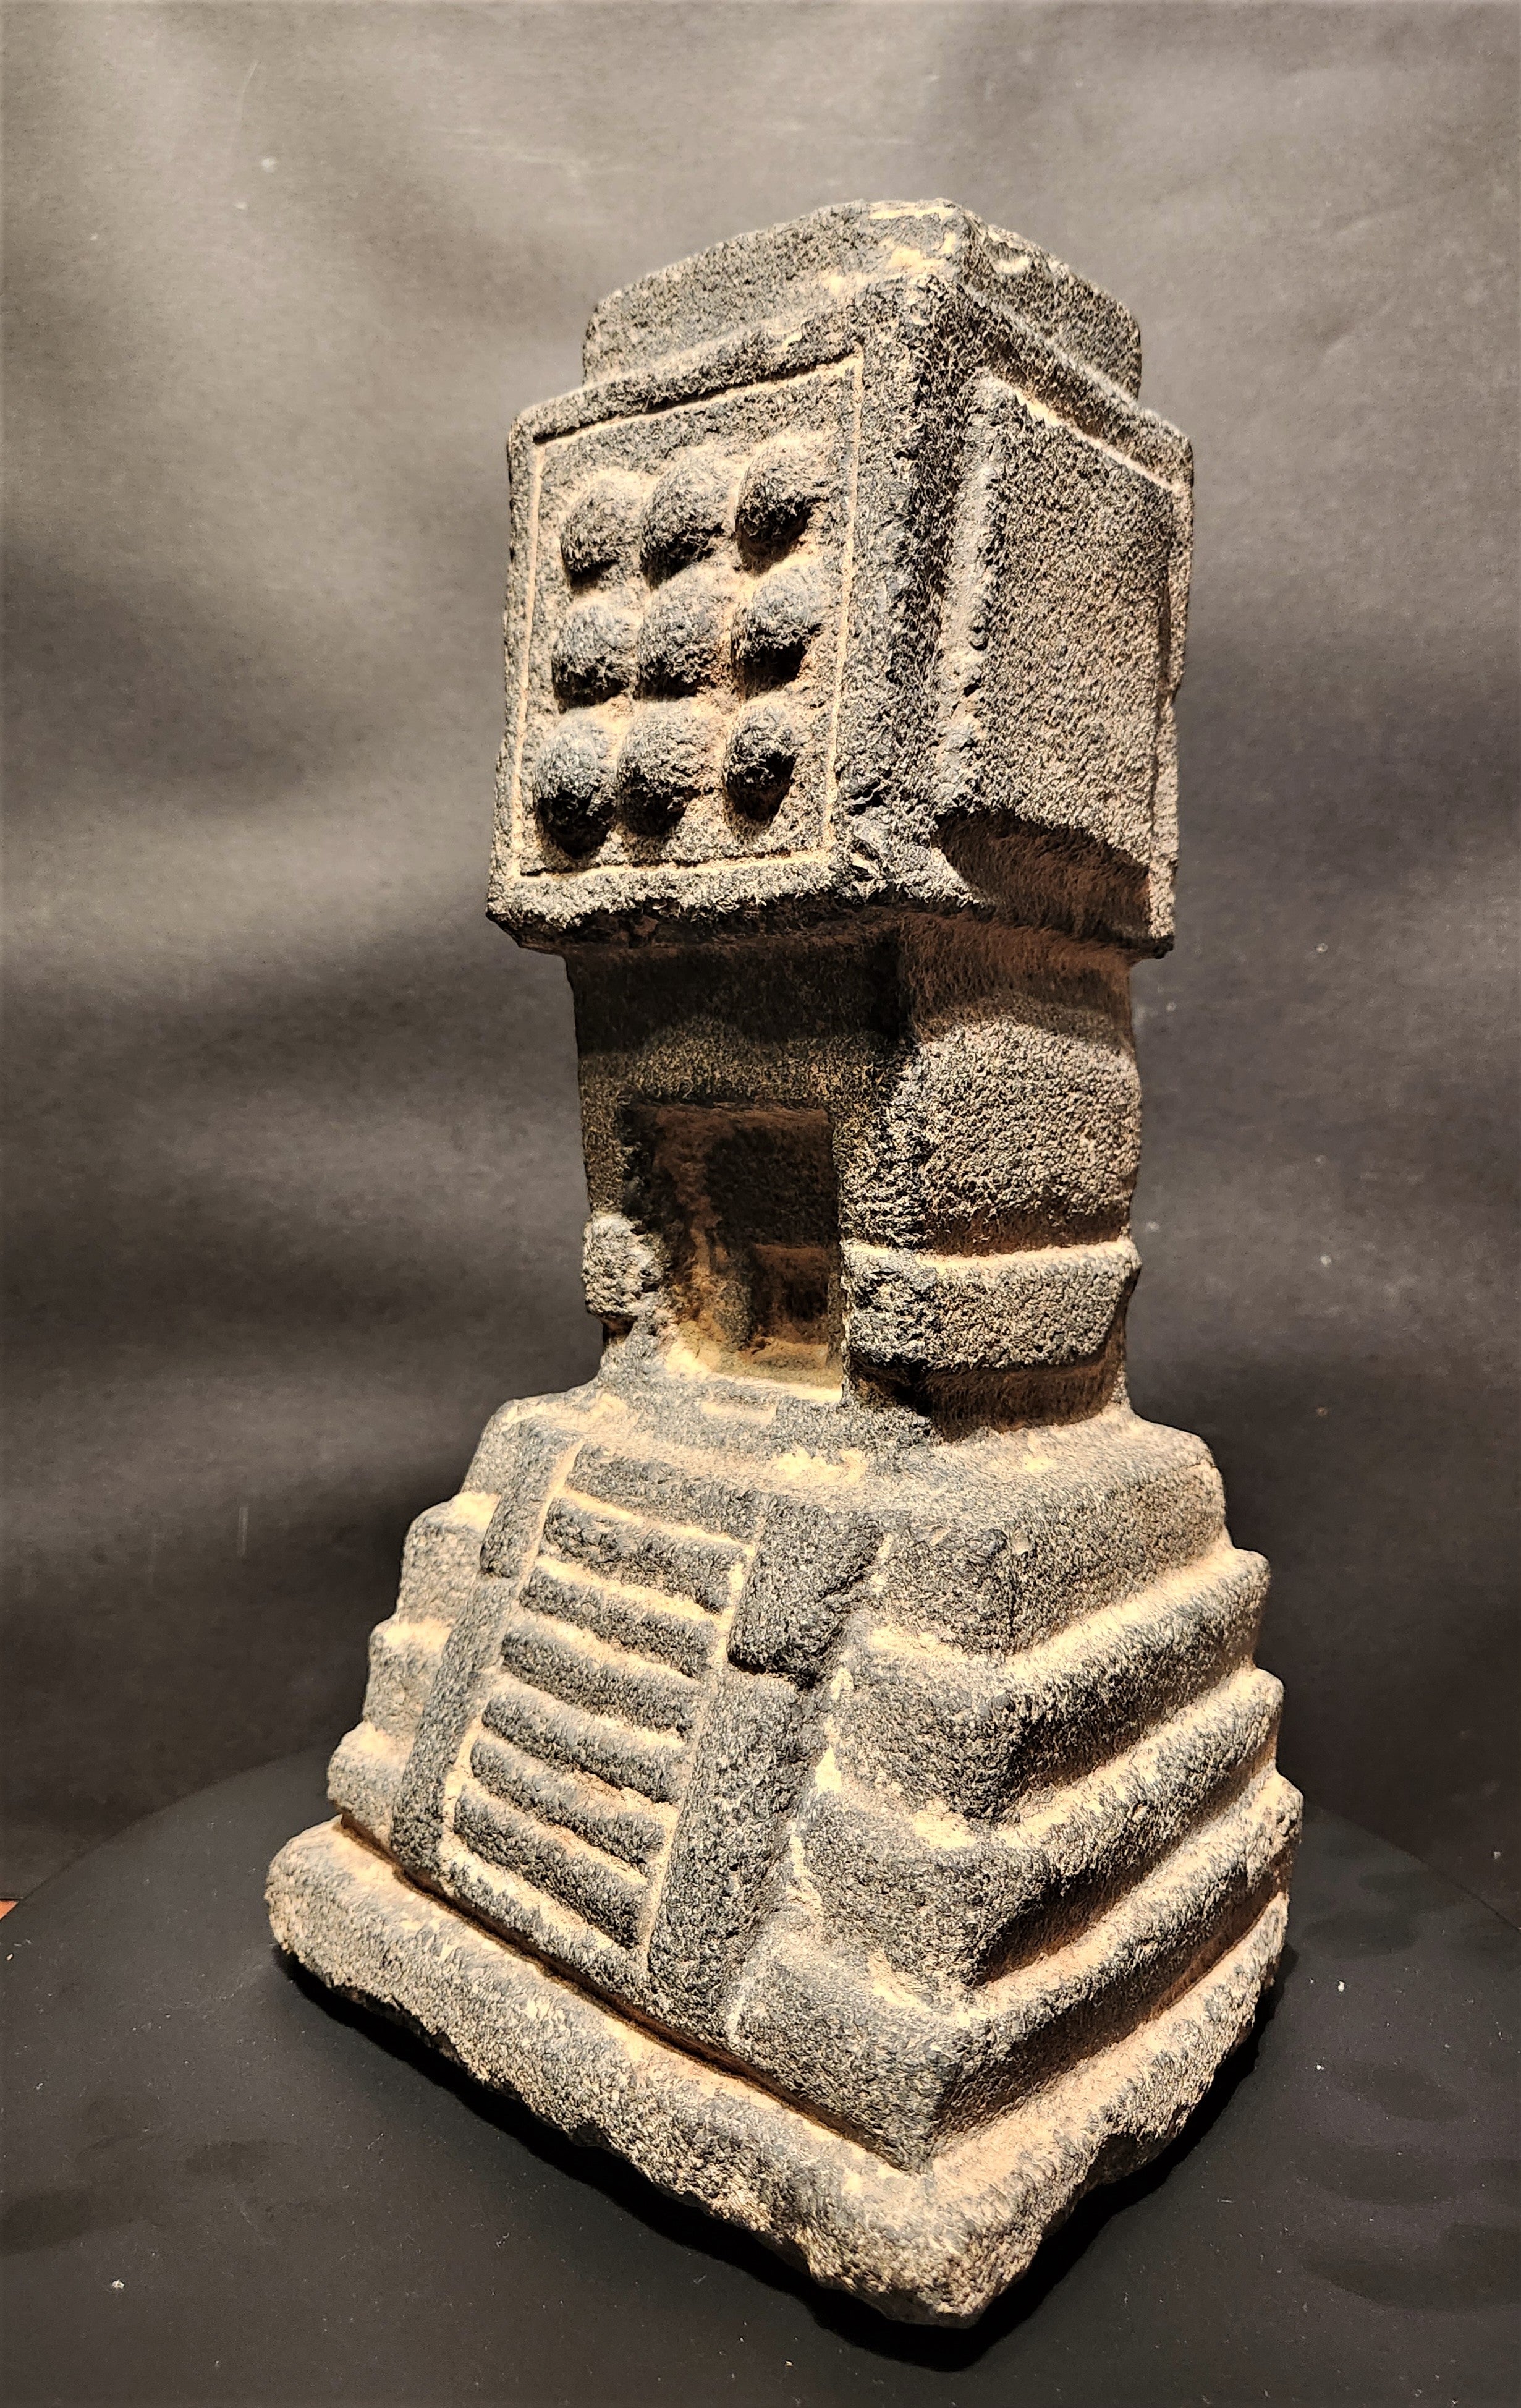 Extrêmement rare modèle de temple aztèque du 15e/16e siècle avec provenance d'avant 1970